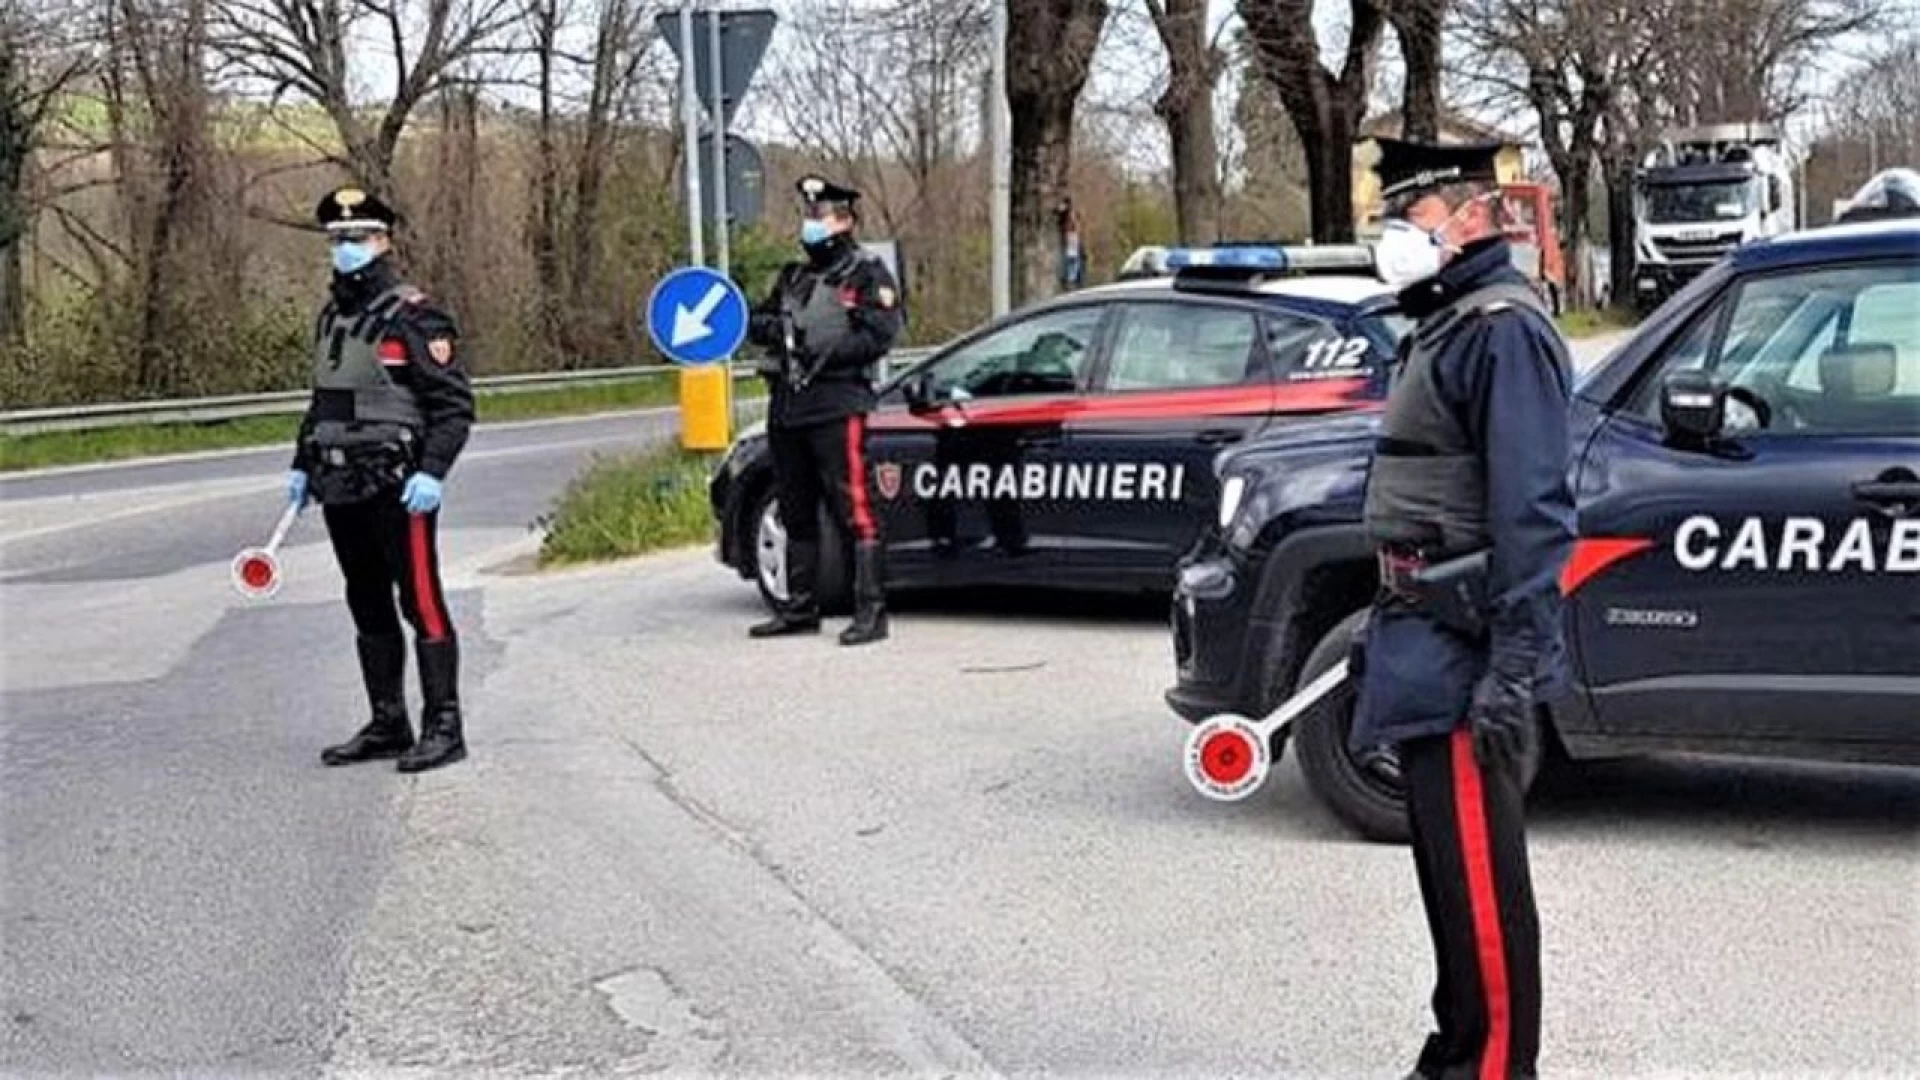 Carabinieri Isernia: continuano i servizi di controllo del territorio